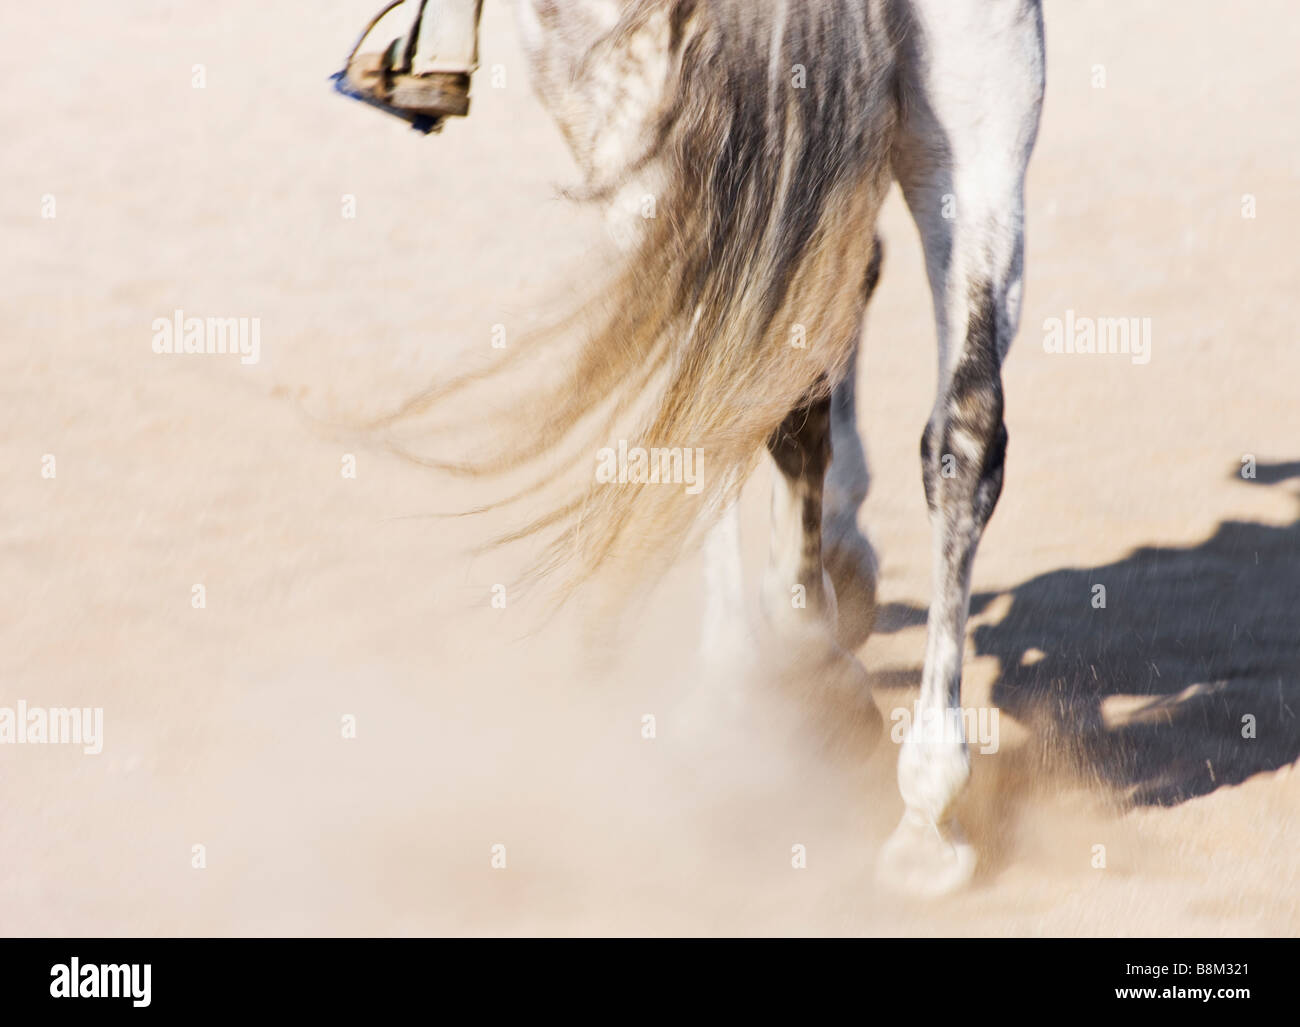 El jinete y su caballo visto desde atrás Foto de stock